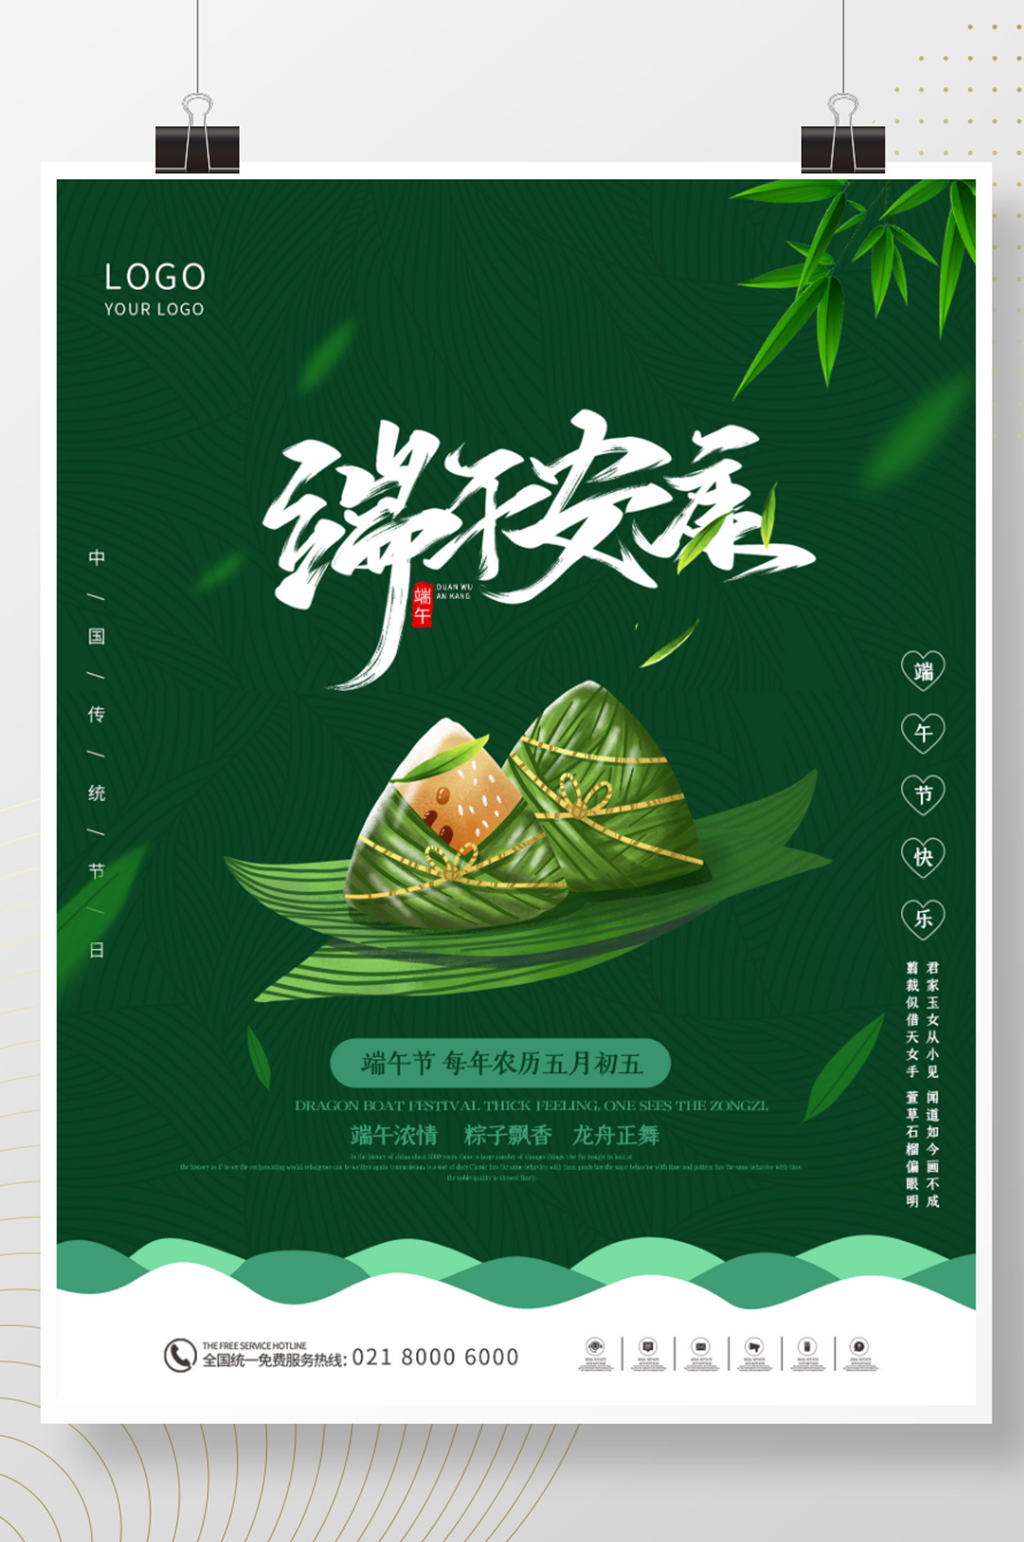 端午节节日粽子海报图片大全大图素材下载,本次作品主题是平面广告